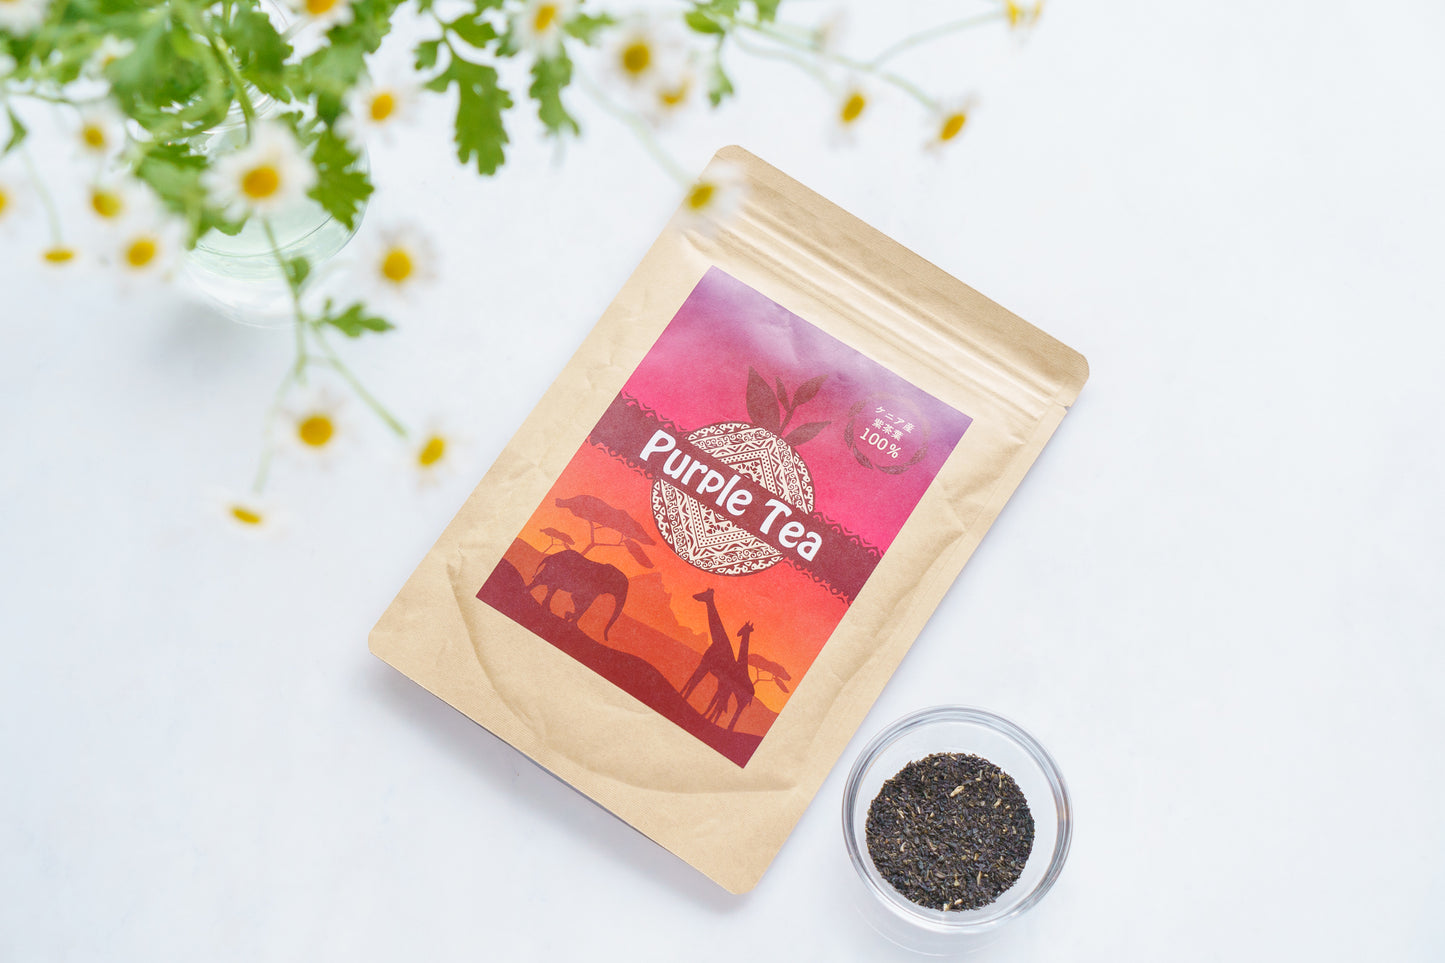 紫茶 パープルティー ケニア産 茶葉 ポリフェノール豊富な天空のお茶 カテキン アントシアニン GHG